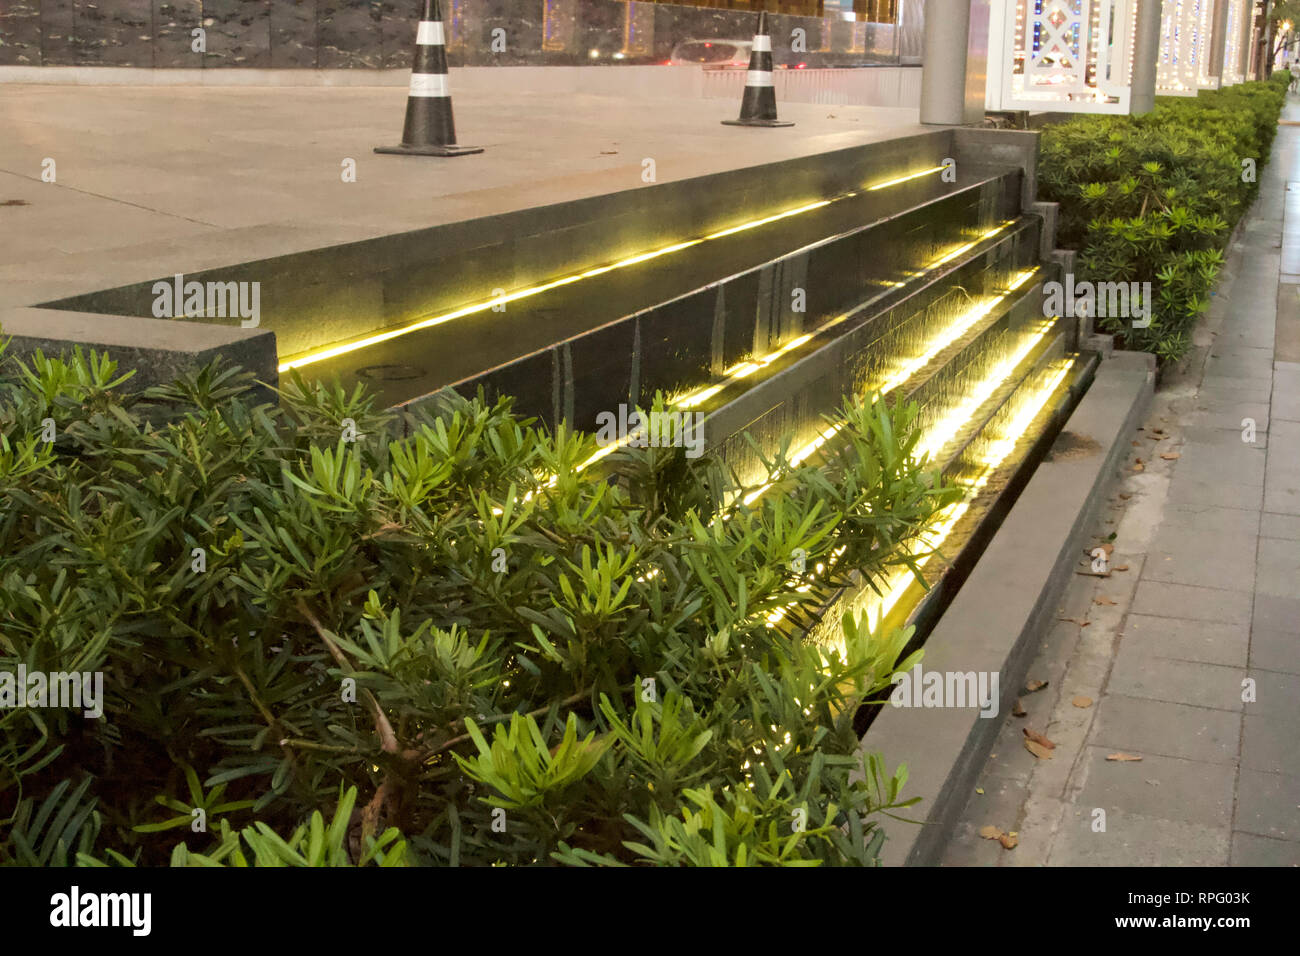 Bangkok-Illuminated stairs on 1031 Rama I road Stock Photo